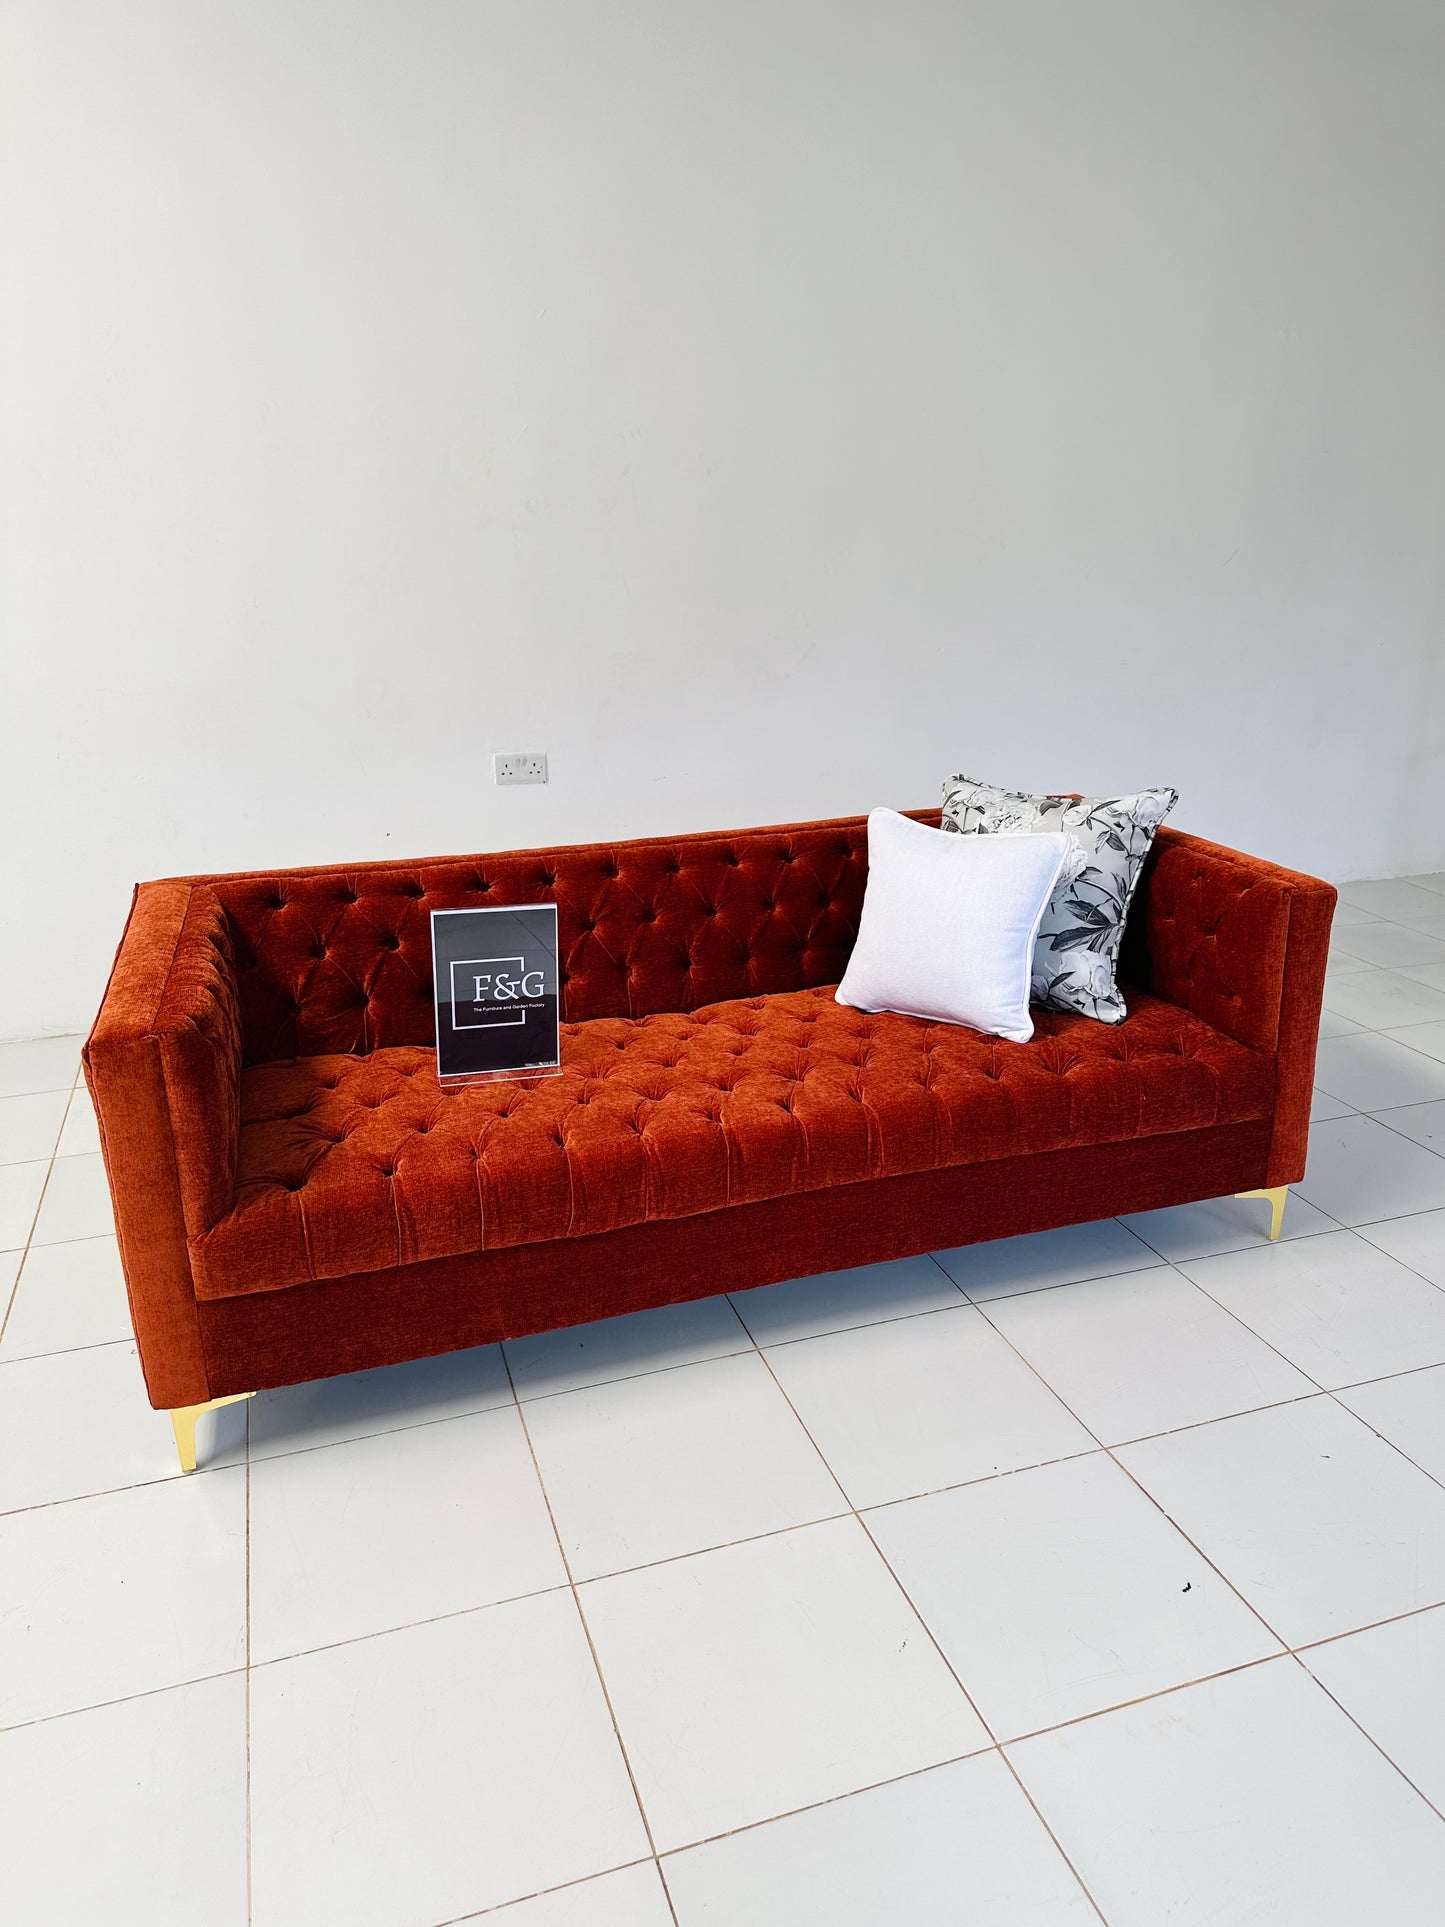 The Boxa Chesterfield Sofa